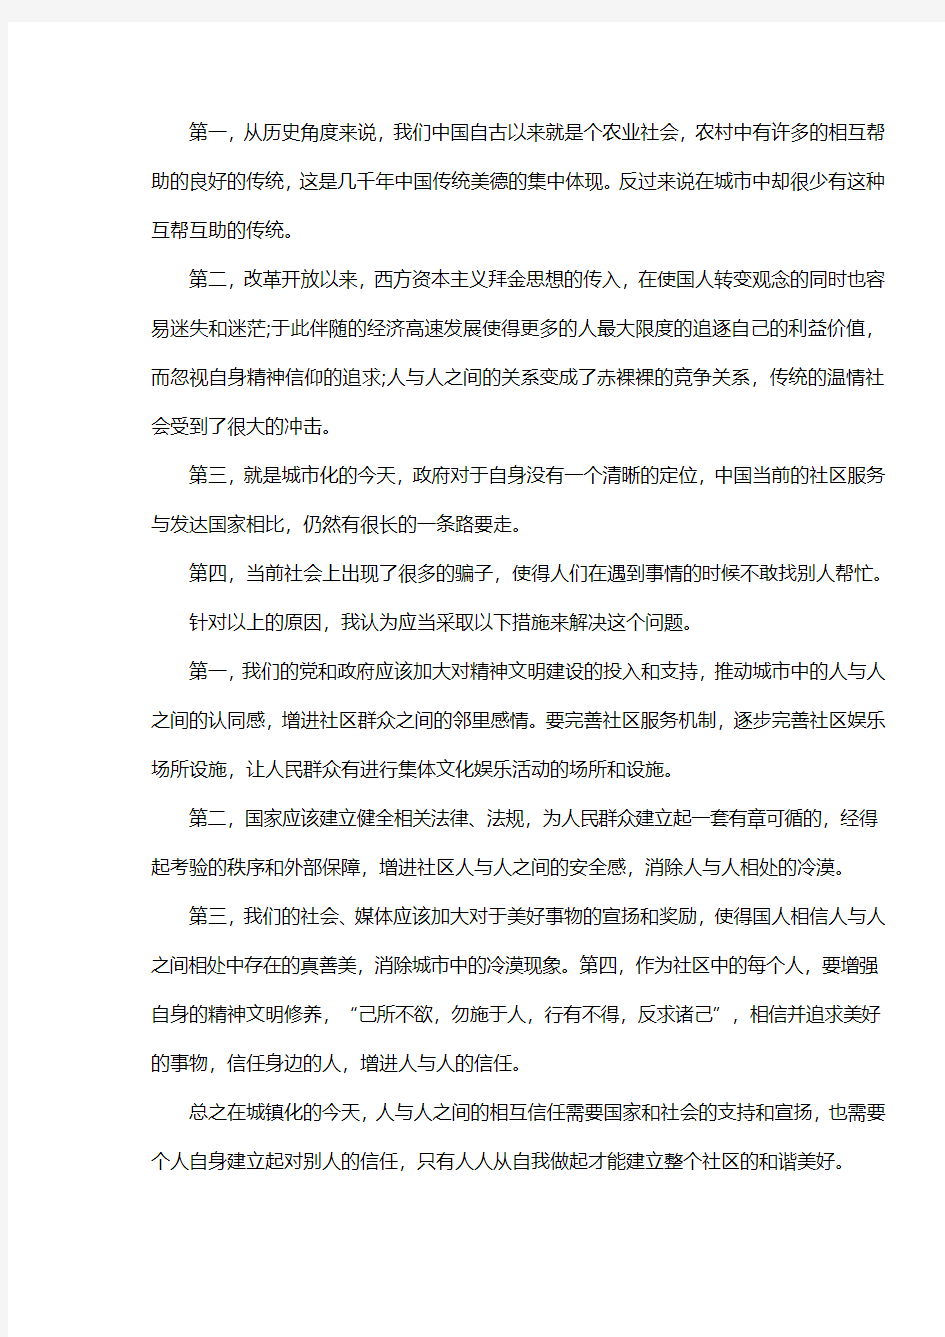 2014年广西南宁公务员面试真题答案及解释